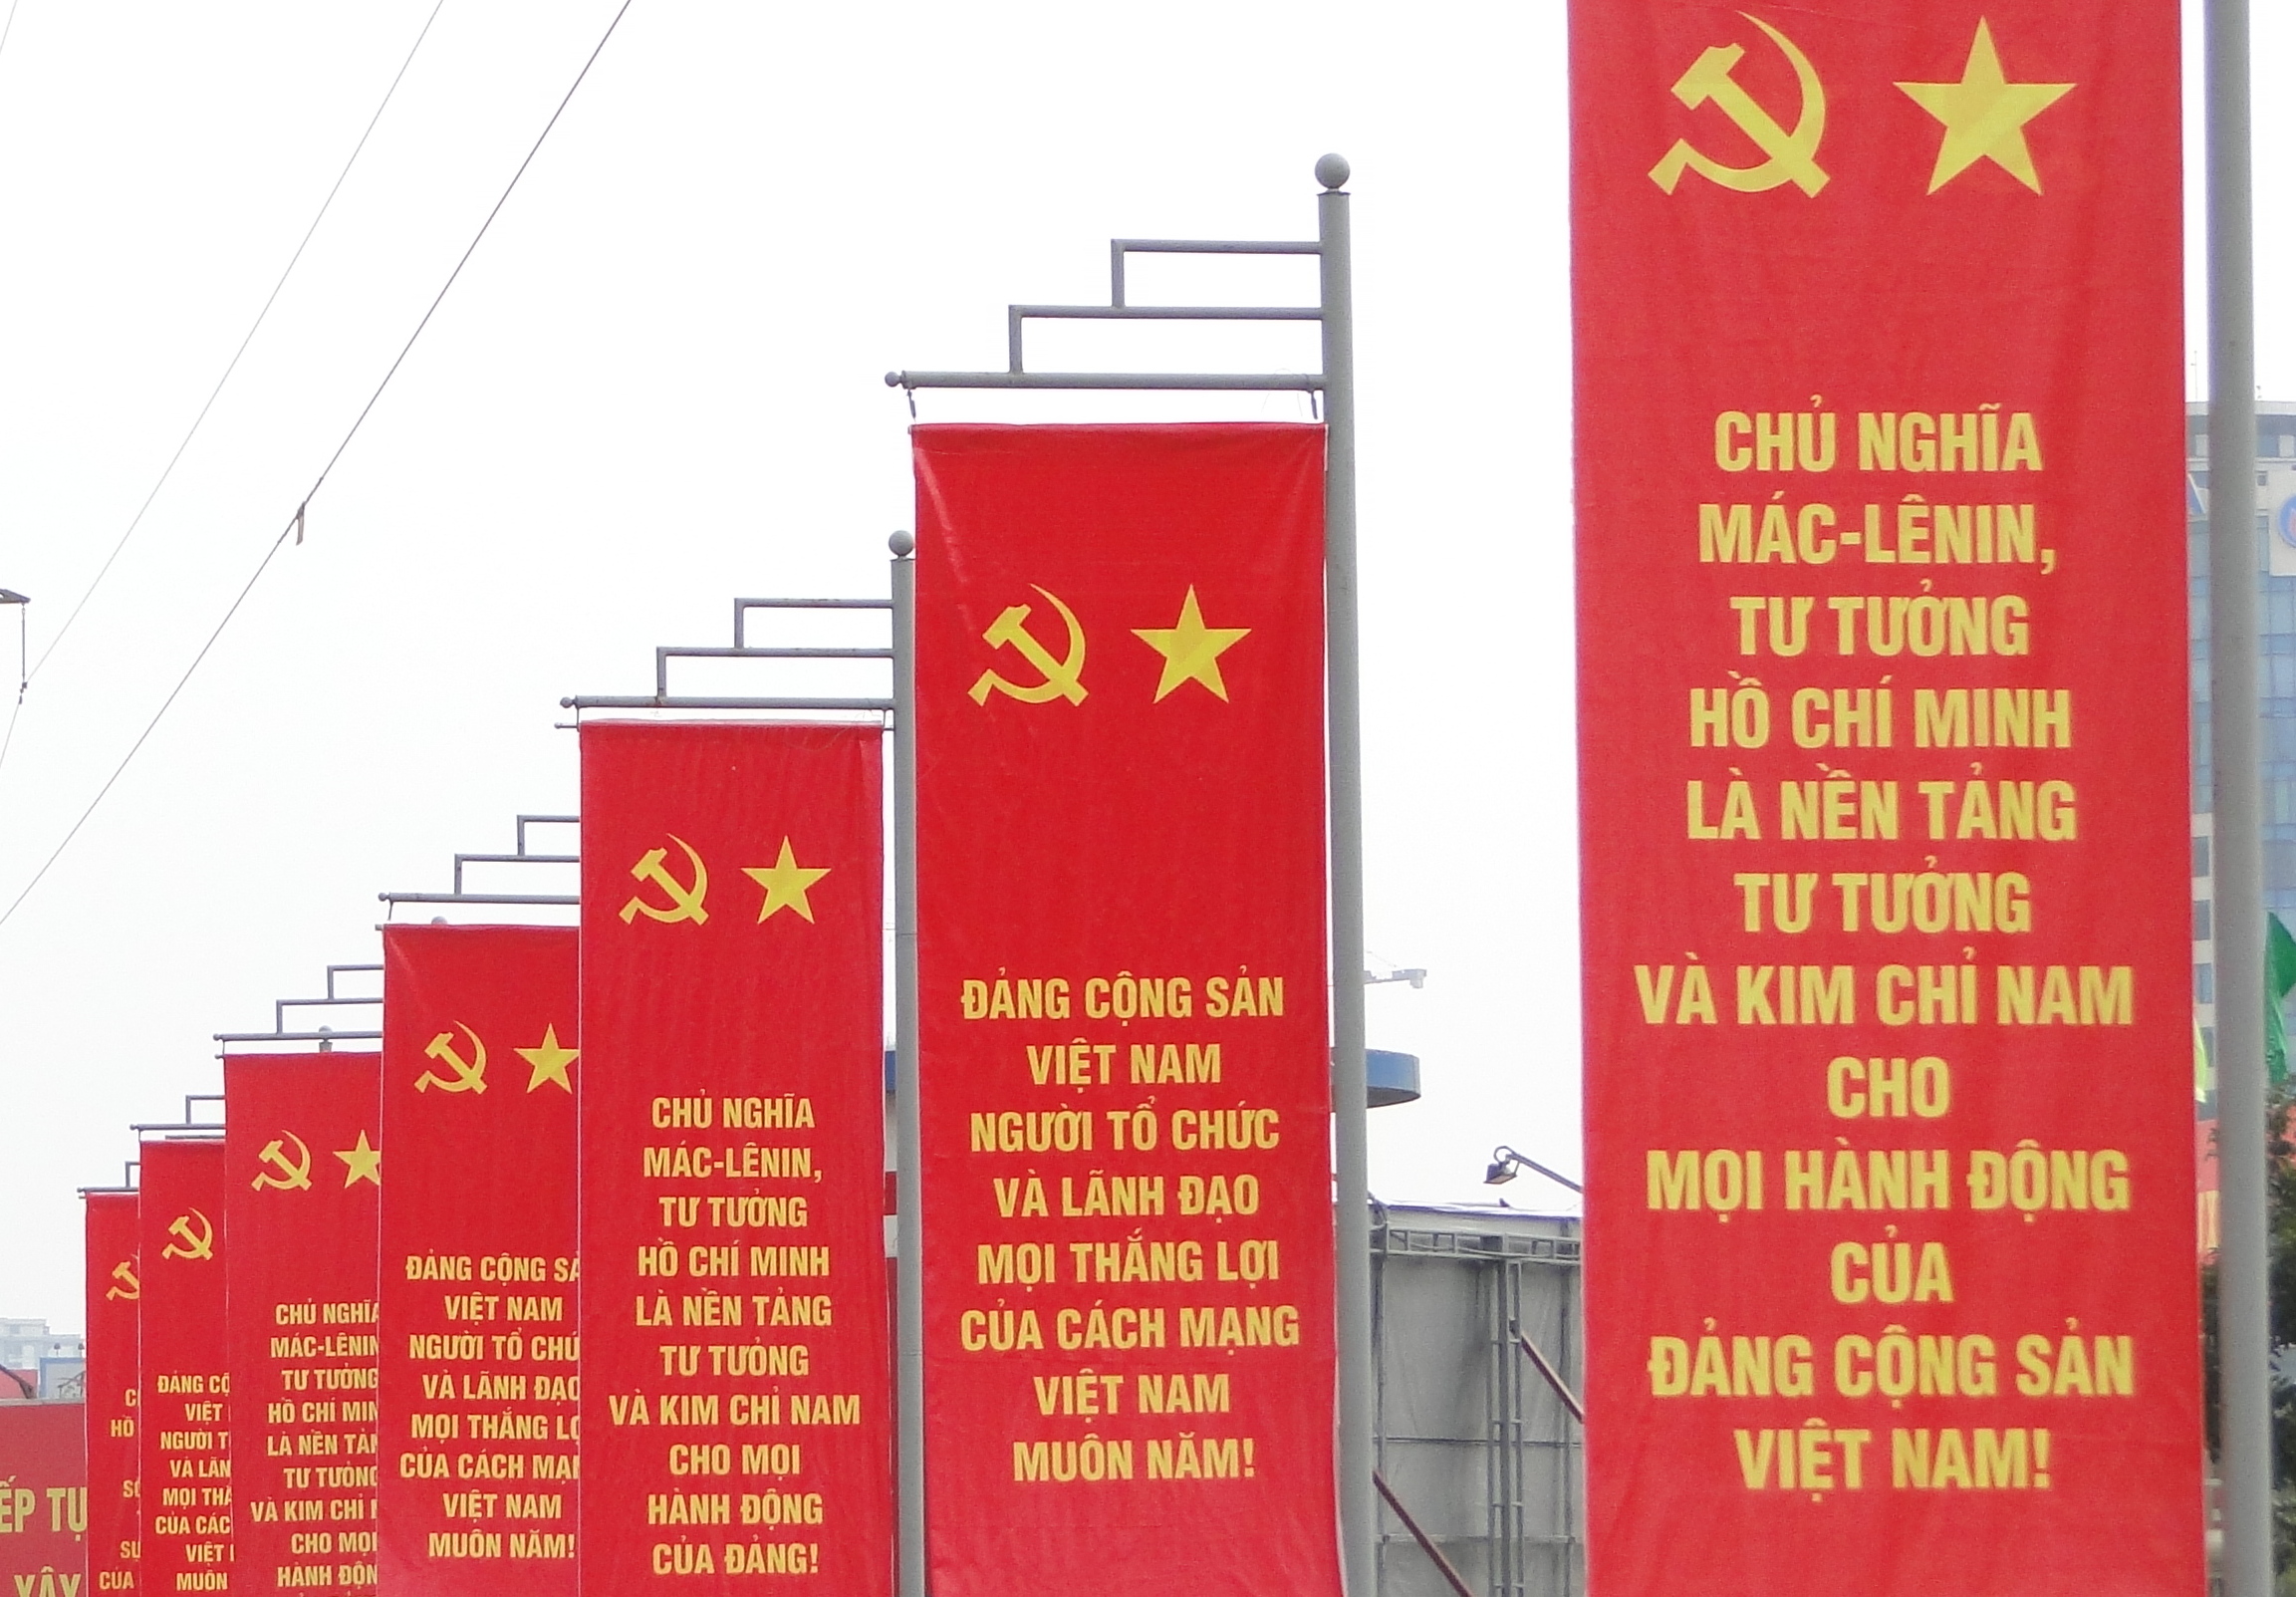 Chủ nghĩa Mác-Lênin: Chủ nghĩa Mác-Lênin là một hệ thống tư tưởng và chủ trương chính trị gắn liền với sự nghiệp giải phóng dân tộc và xây dựng xã hội cộng sản. Những giá trị về công bằng xã hội, tự do, demoracy và đoàn kết sẽ tiếp tục được phát triển và lan rộng trong cộng đồng người Việt Nam trong tương lai.